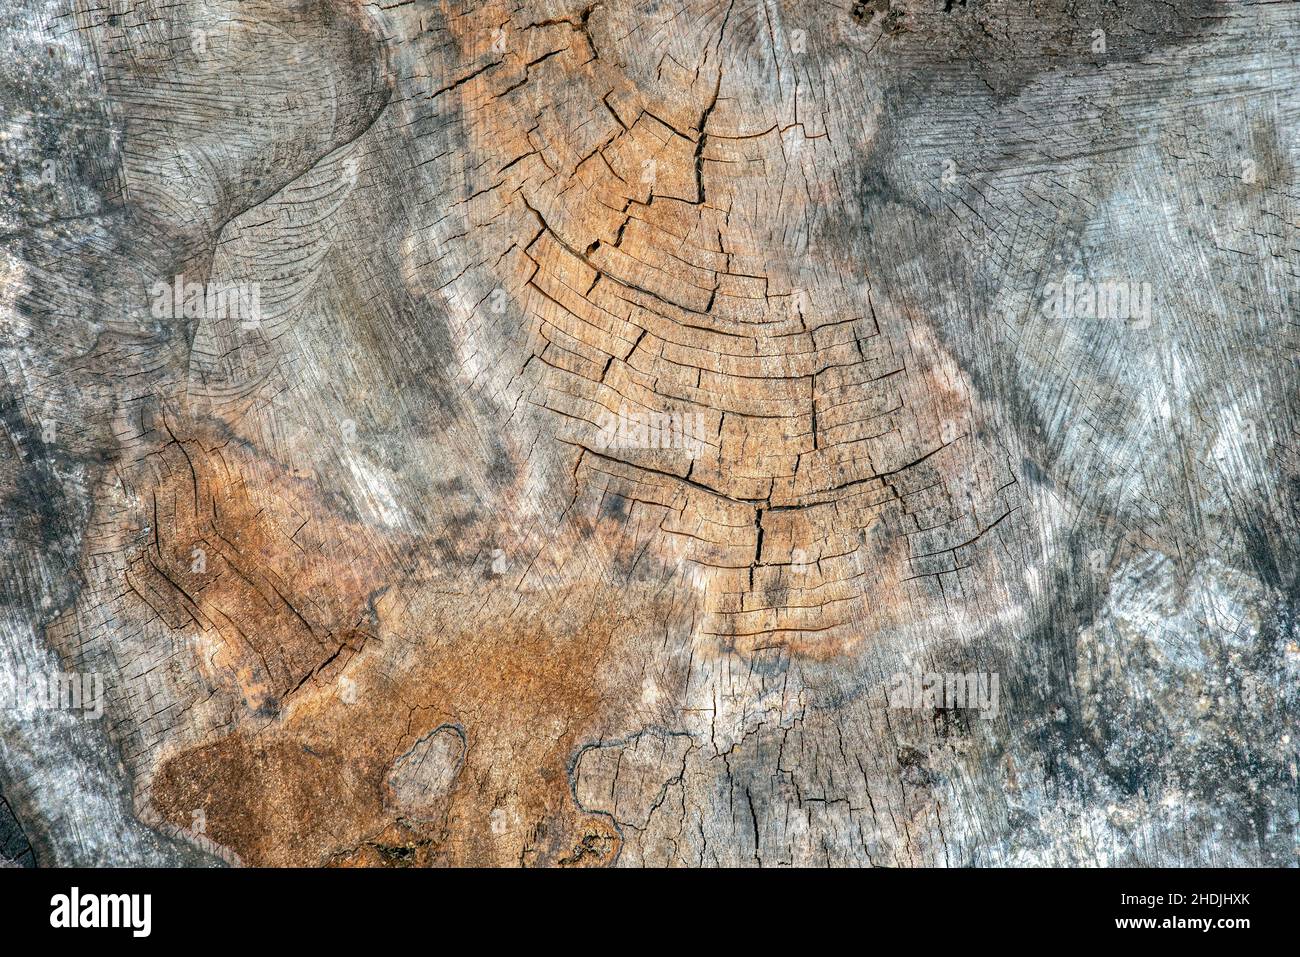 La surface du bois est fissurée et moisie.Texture d'un vieux moignon d'arbre avec des fissures profondes et des nœuds rapprochés Banque D'Images